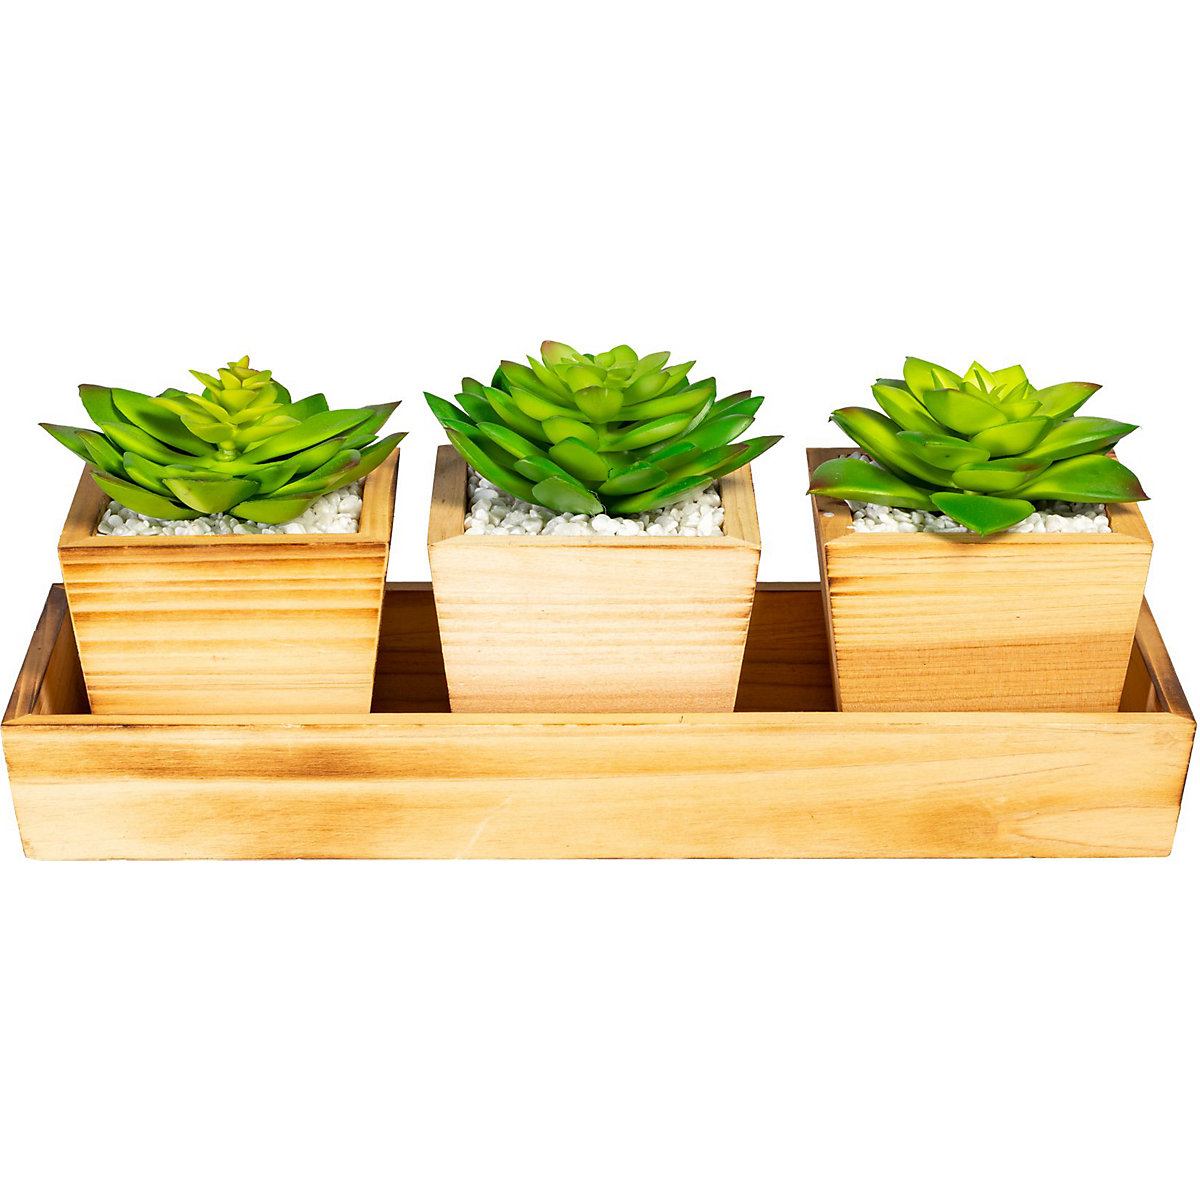 Aranjament de plante suculente pe tavă de lemn (Imagine produs 2)